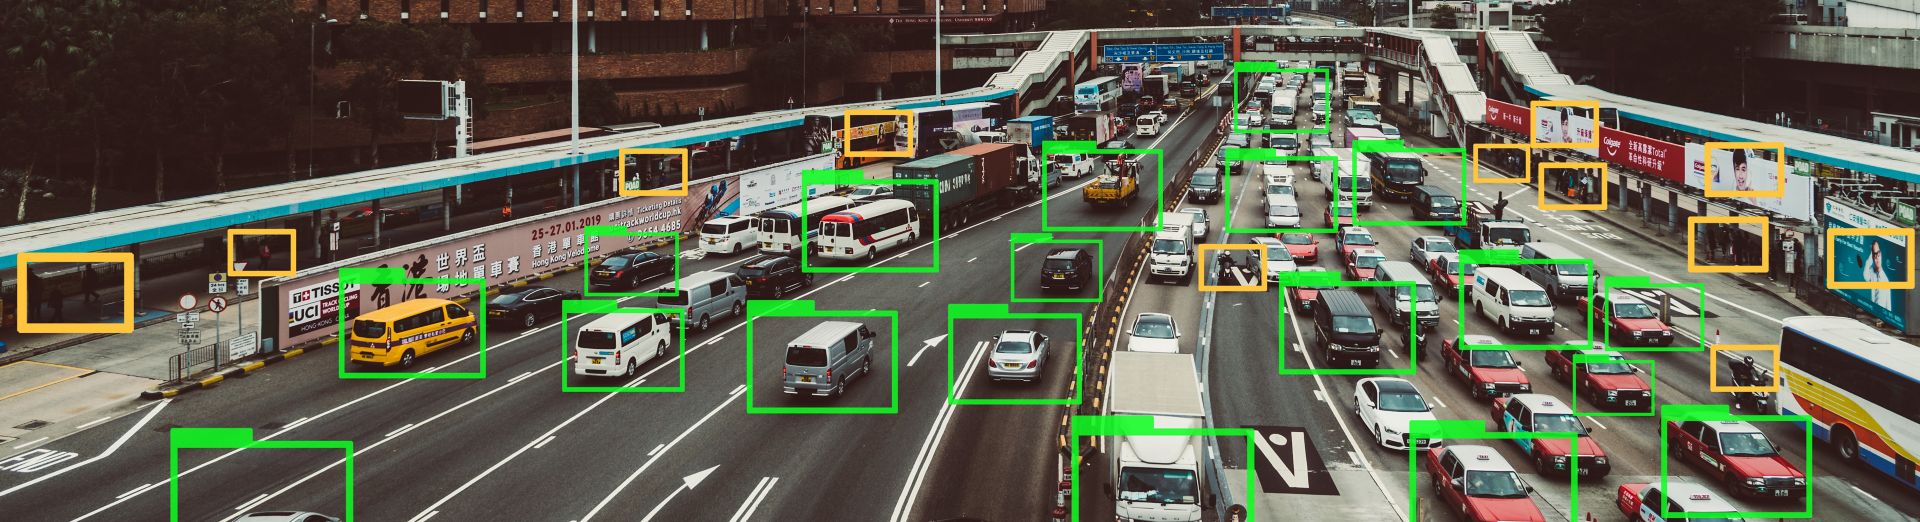 Technologie voor machine learning die auto's volgt op een snelweg